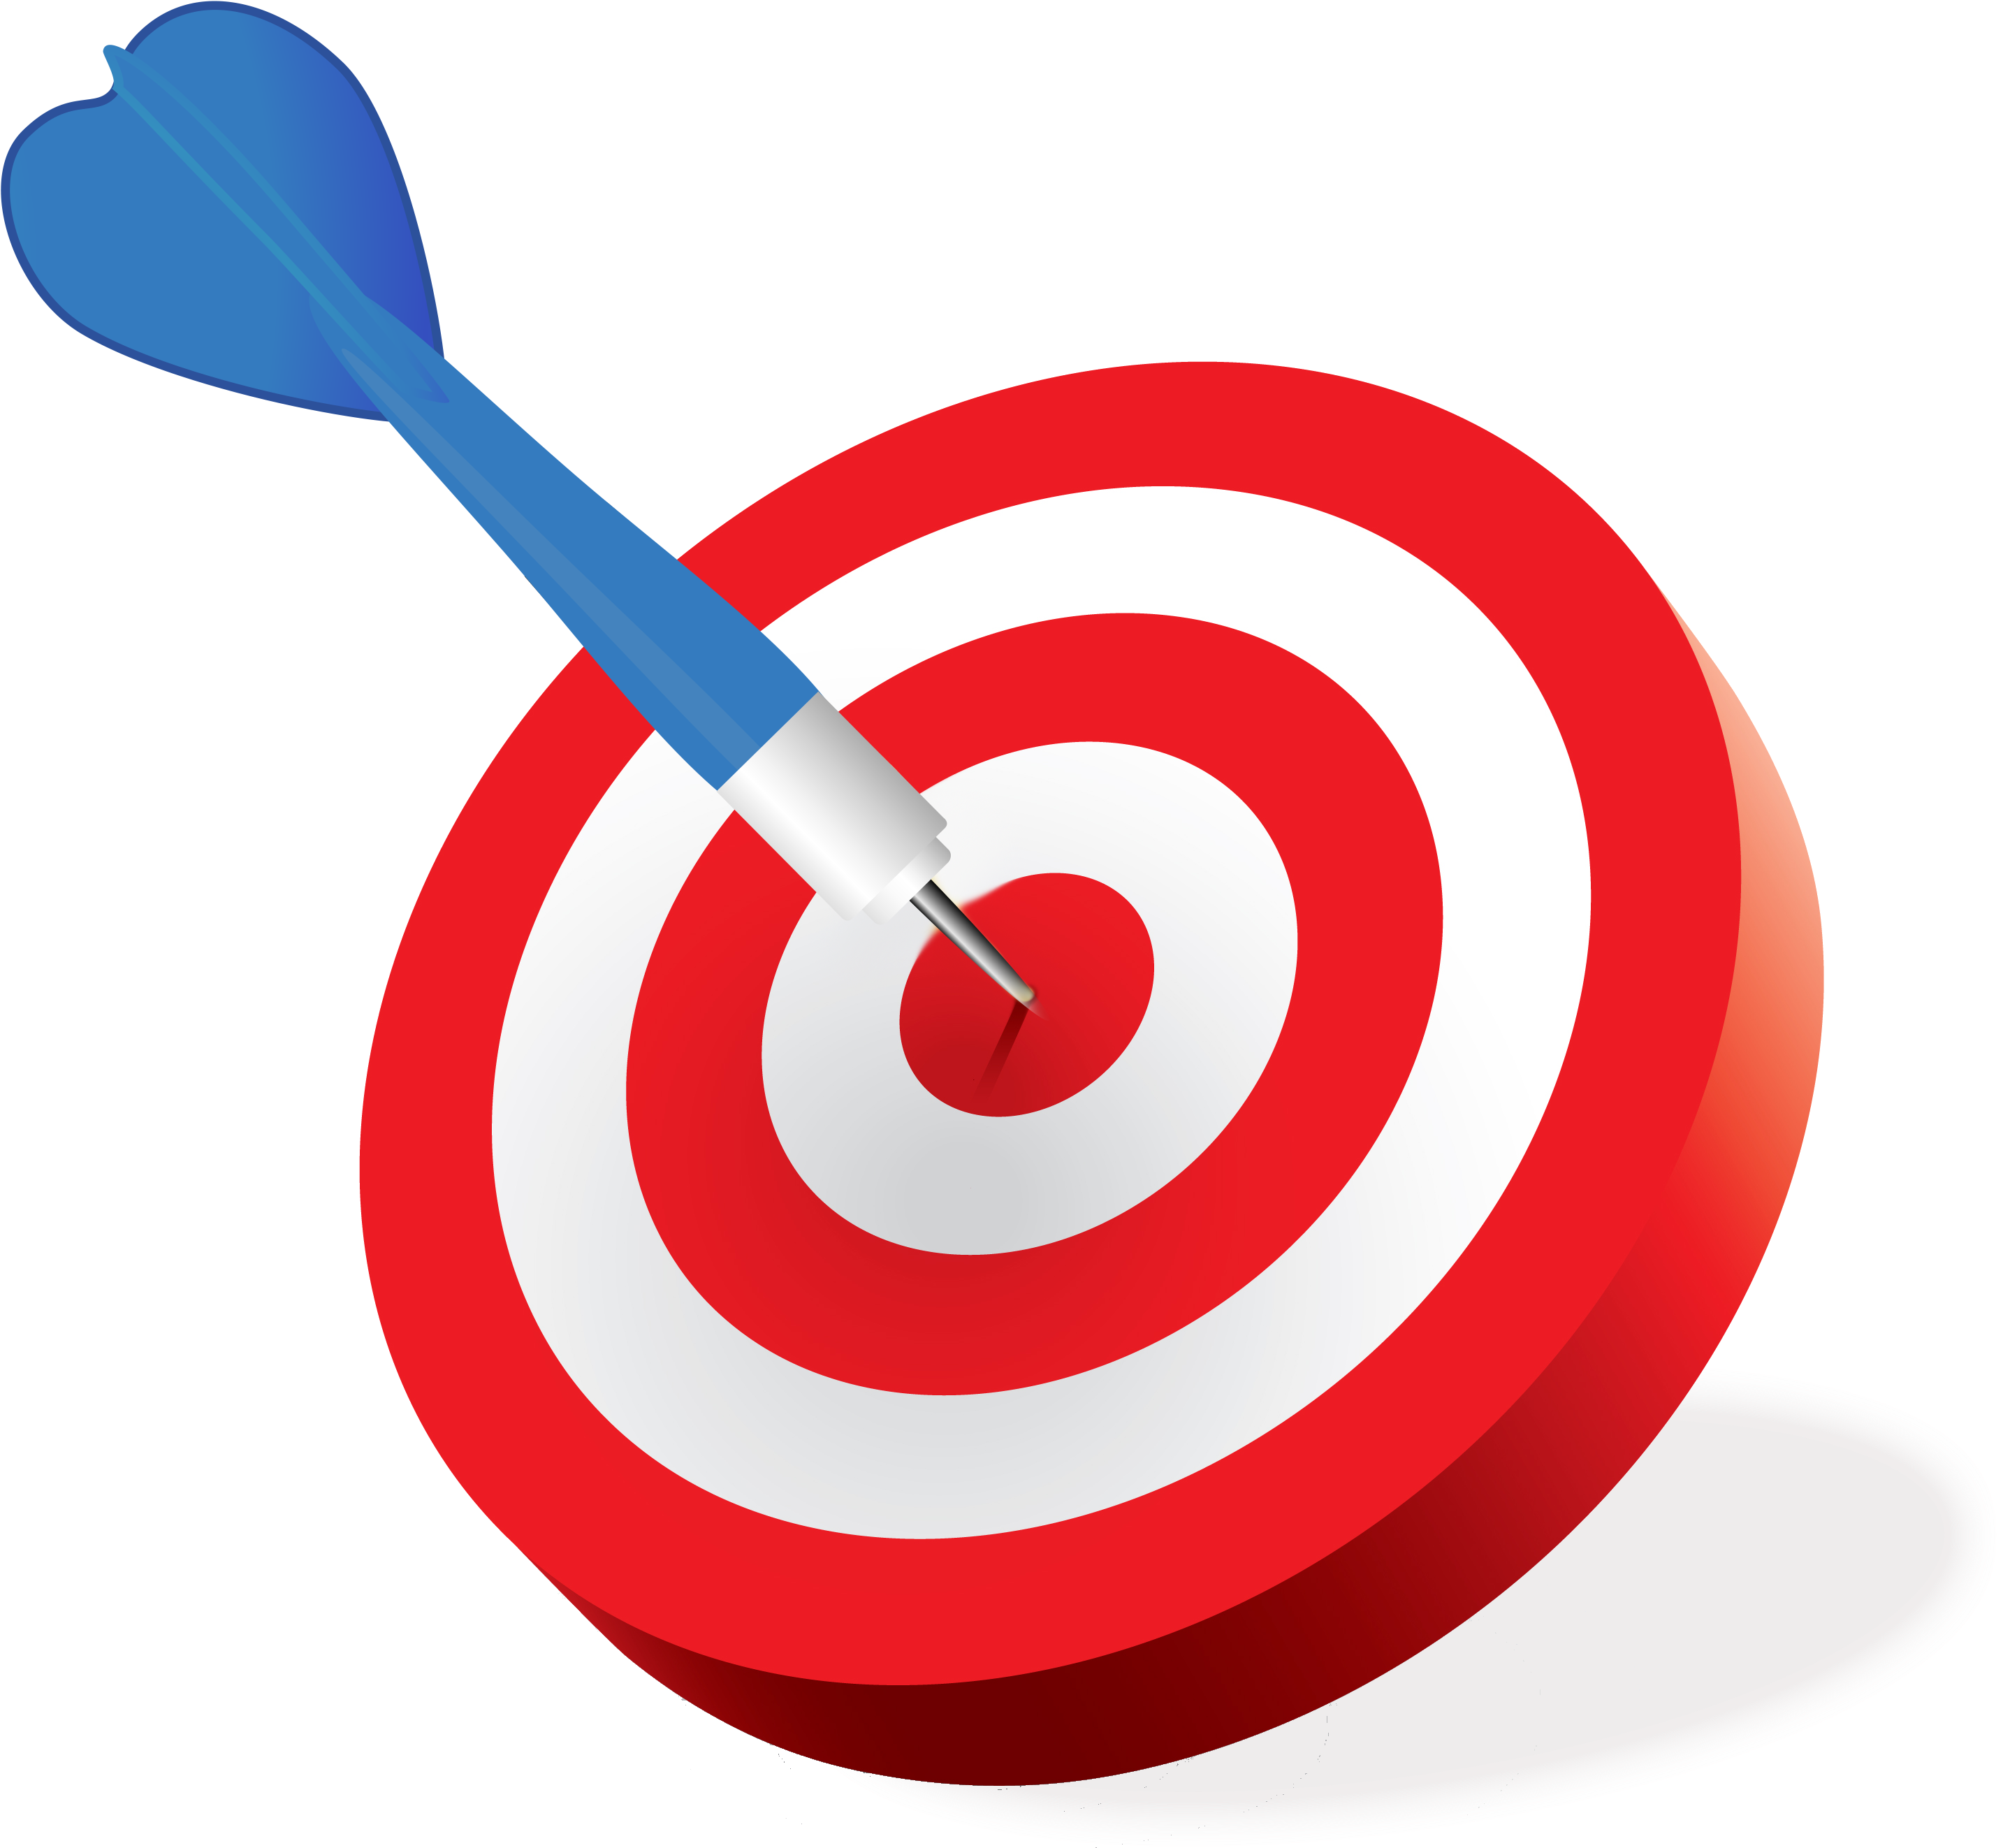 Goal Shooting Target Clip Art - Goal Shooting Target Clip Art.